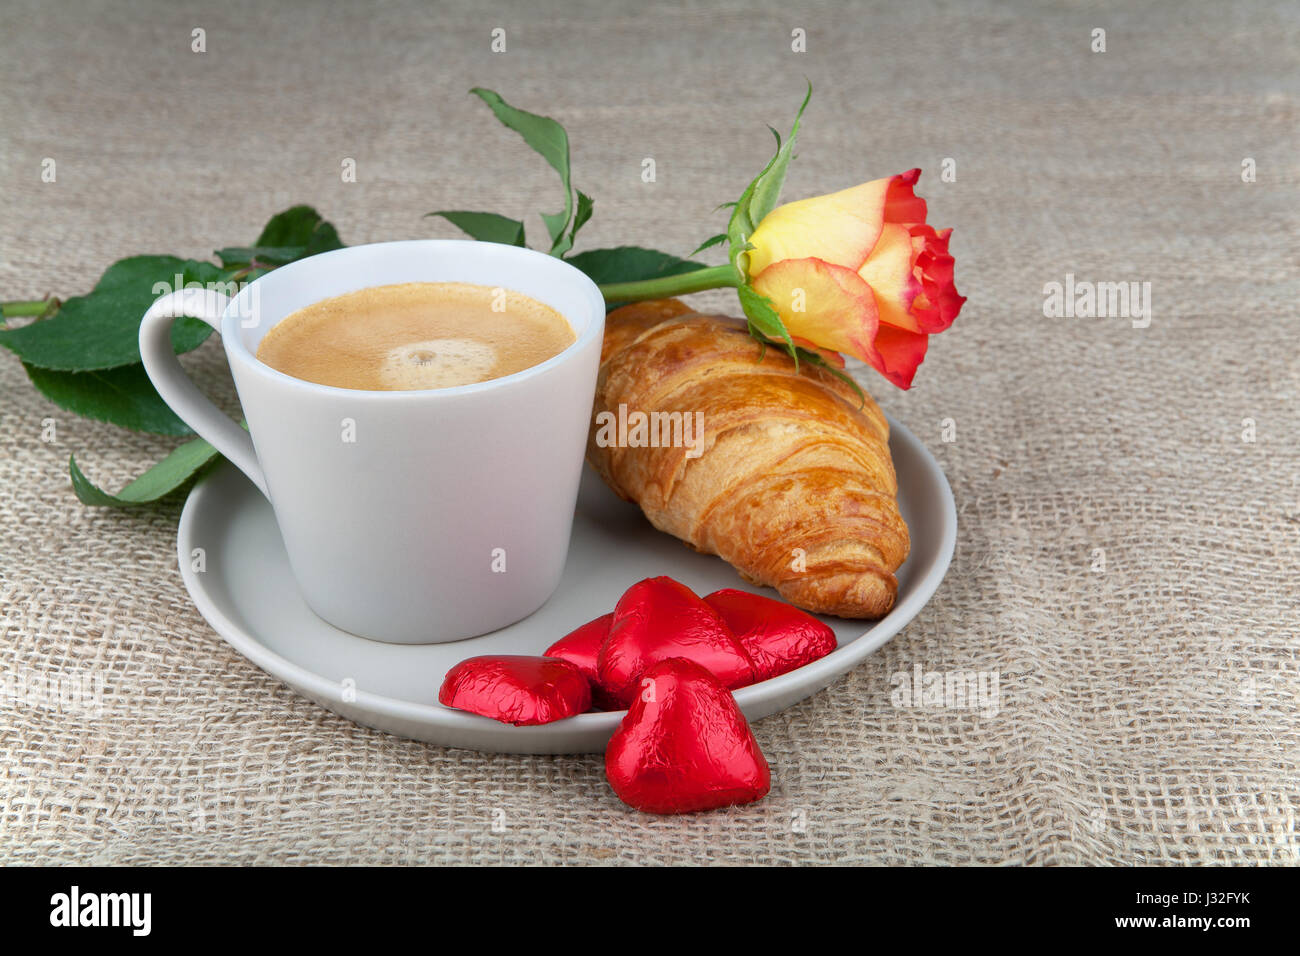 Caffè e Croissant, cuore cioccolato in un involucro di colore rosso e rosso-rosa gialla Foto Stock